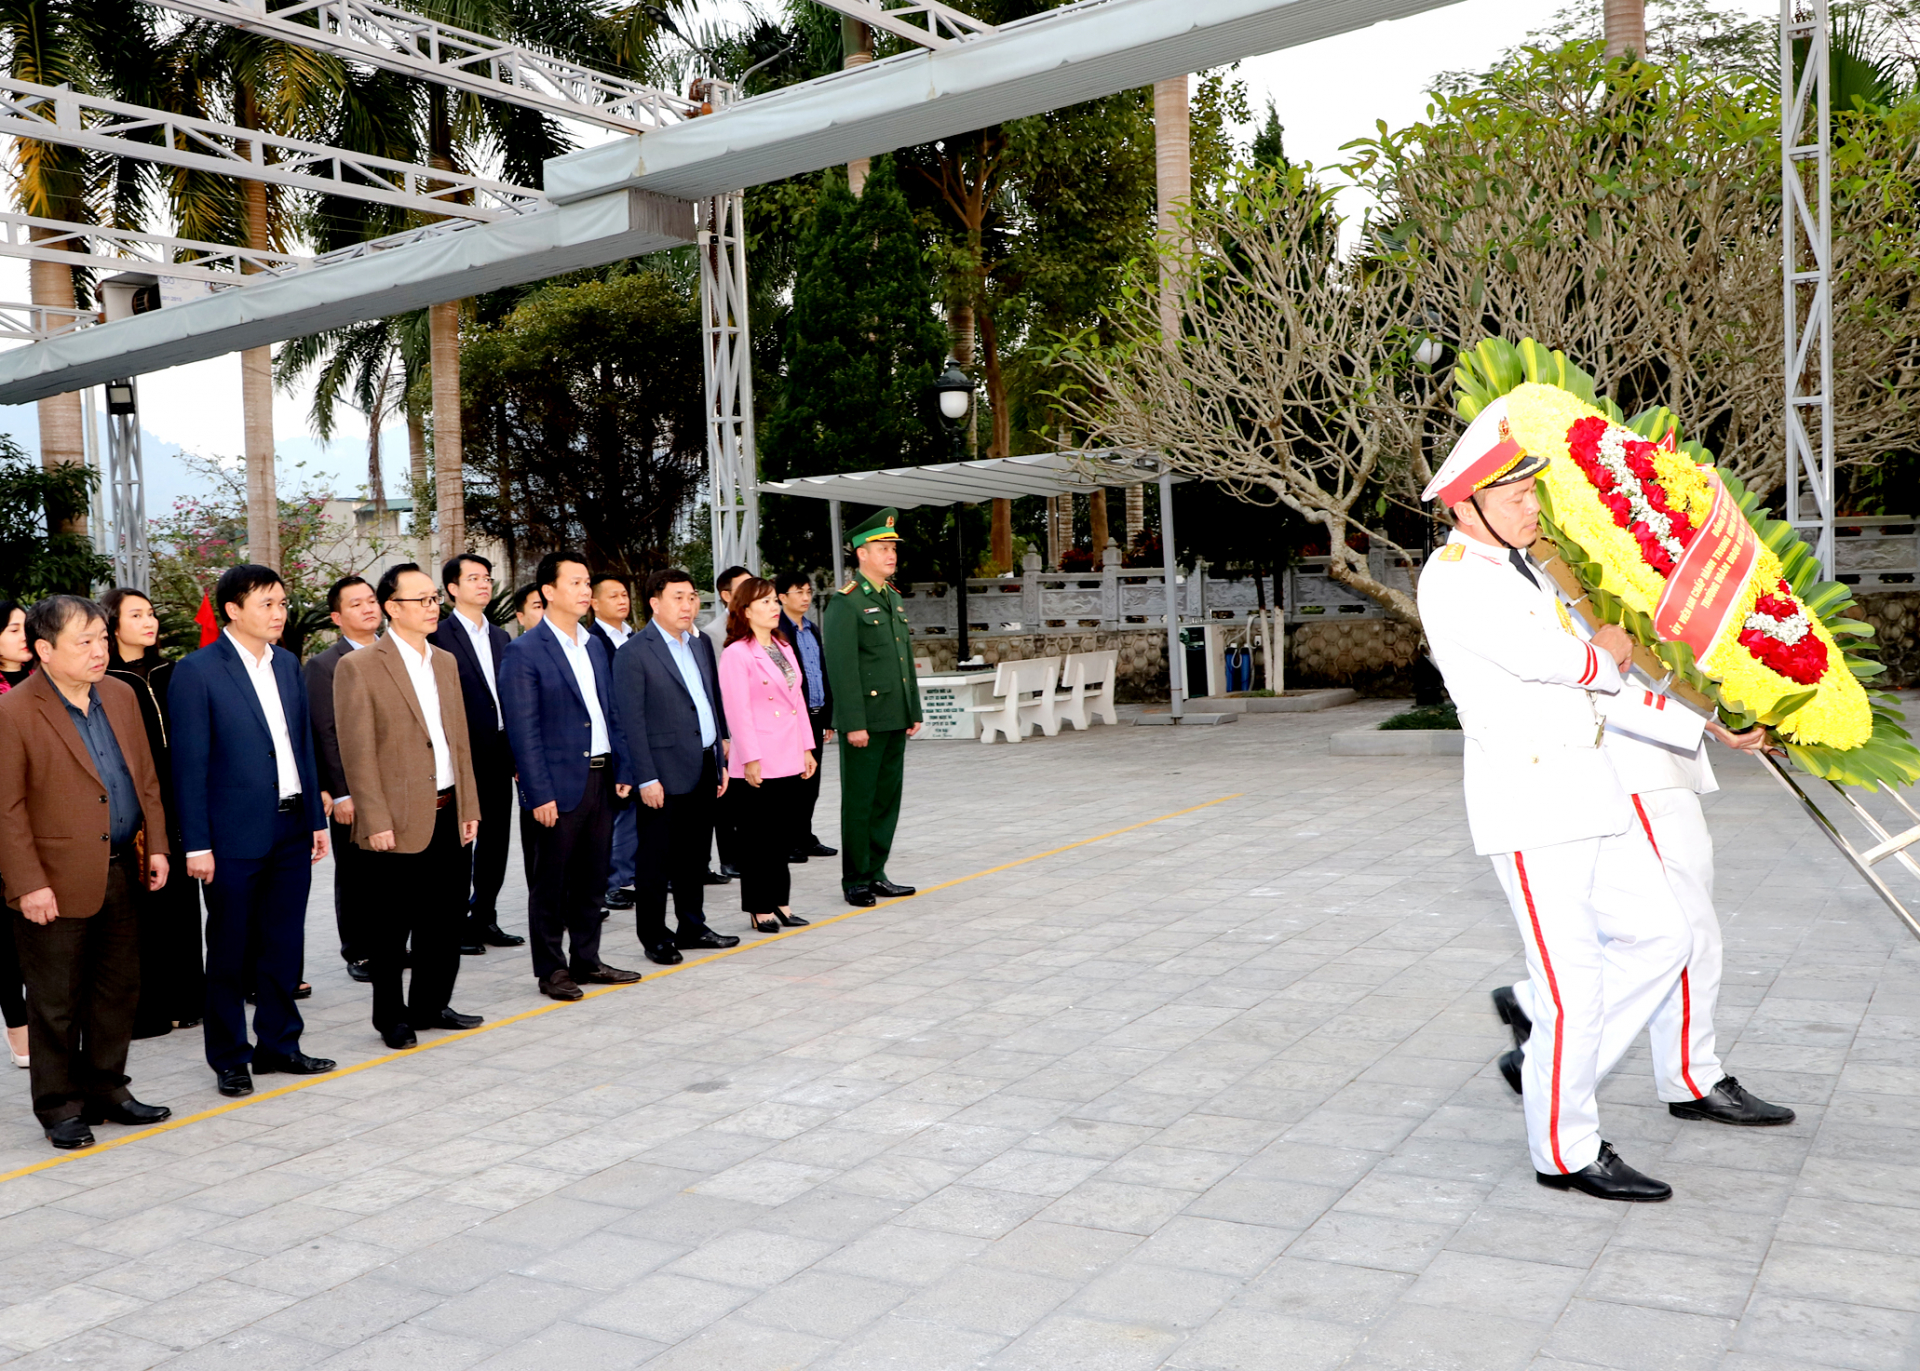 Bộ trưởng Bộ Tài nguyên và Môi trường Đặng Quốc Khánh và đoàn công tác cùng các đồng chí Thường trực Tỉnh ủy dâng hoa, viếng các AHLS tại Nghĩa trang Liệt sỹ Quốc gia Vị xuyên.